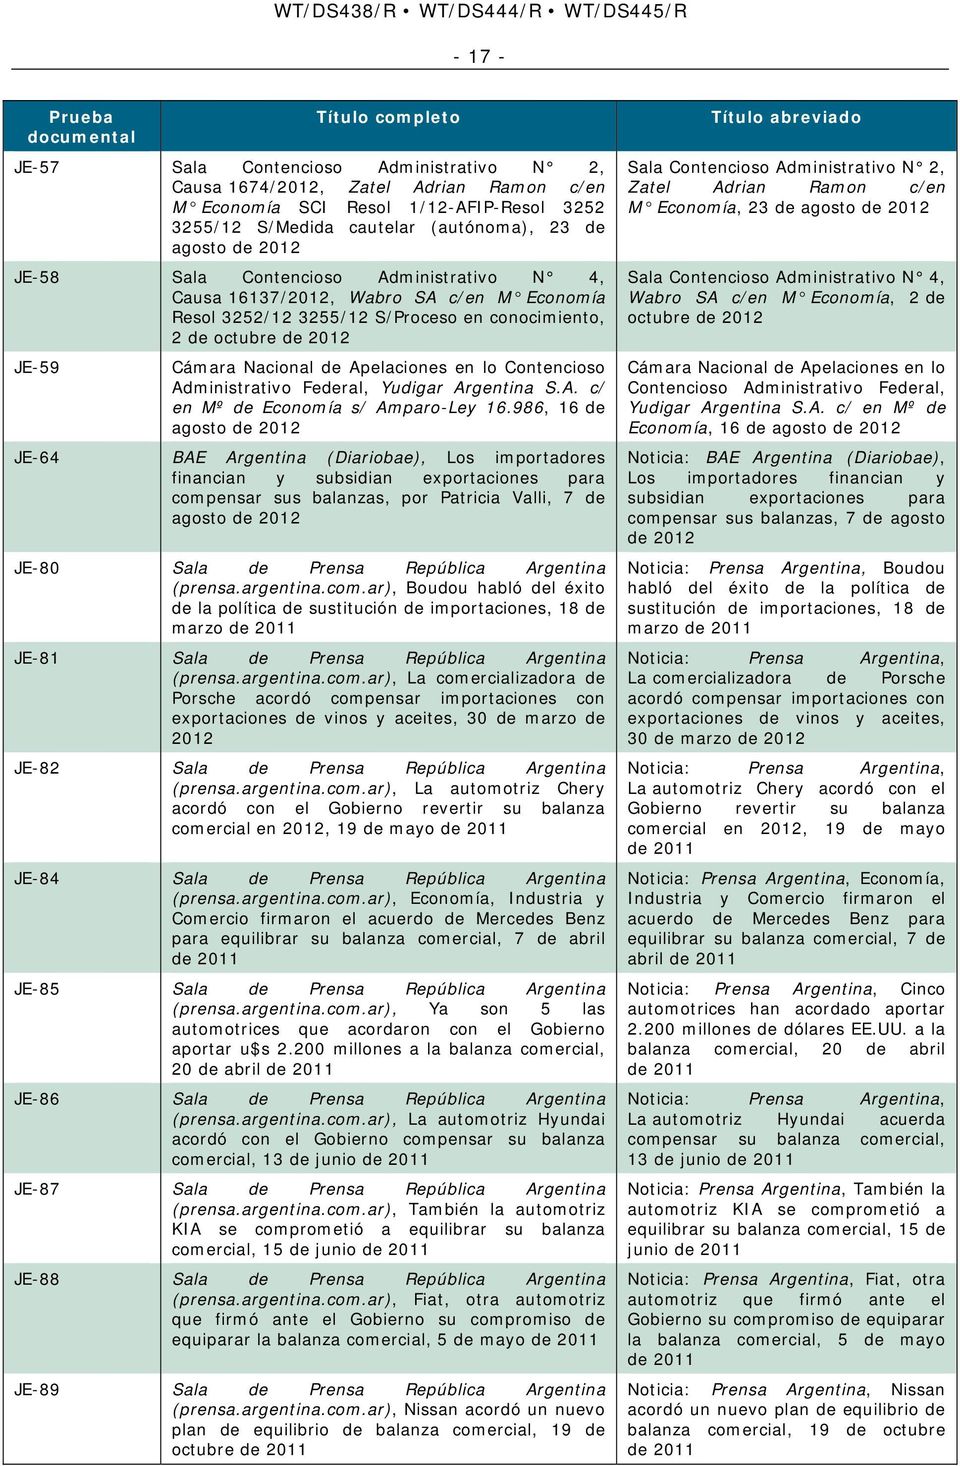 Cámara Nacional de Apelaciones en lo Contencioso Administrativo Federal, Yudigar Argentina S.A. c/ en Mº de Economía s/ Amparo-Ley 16.